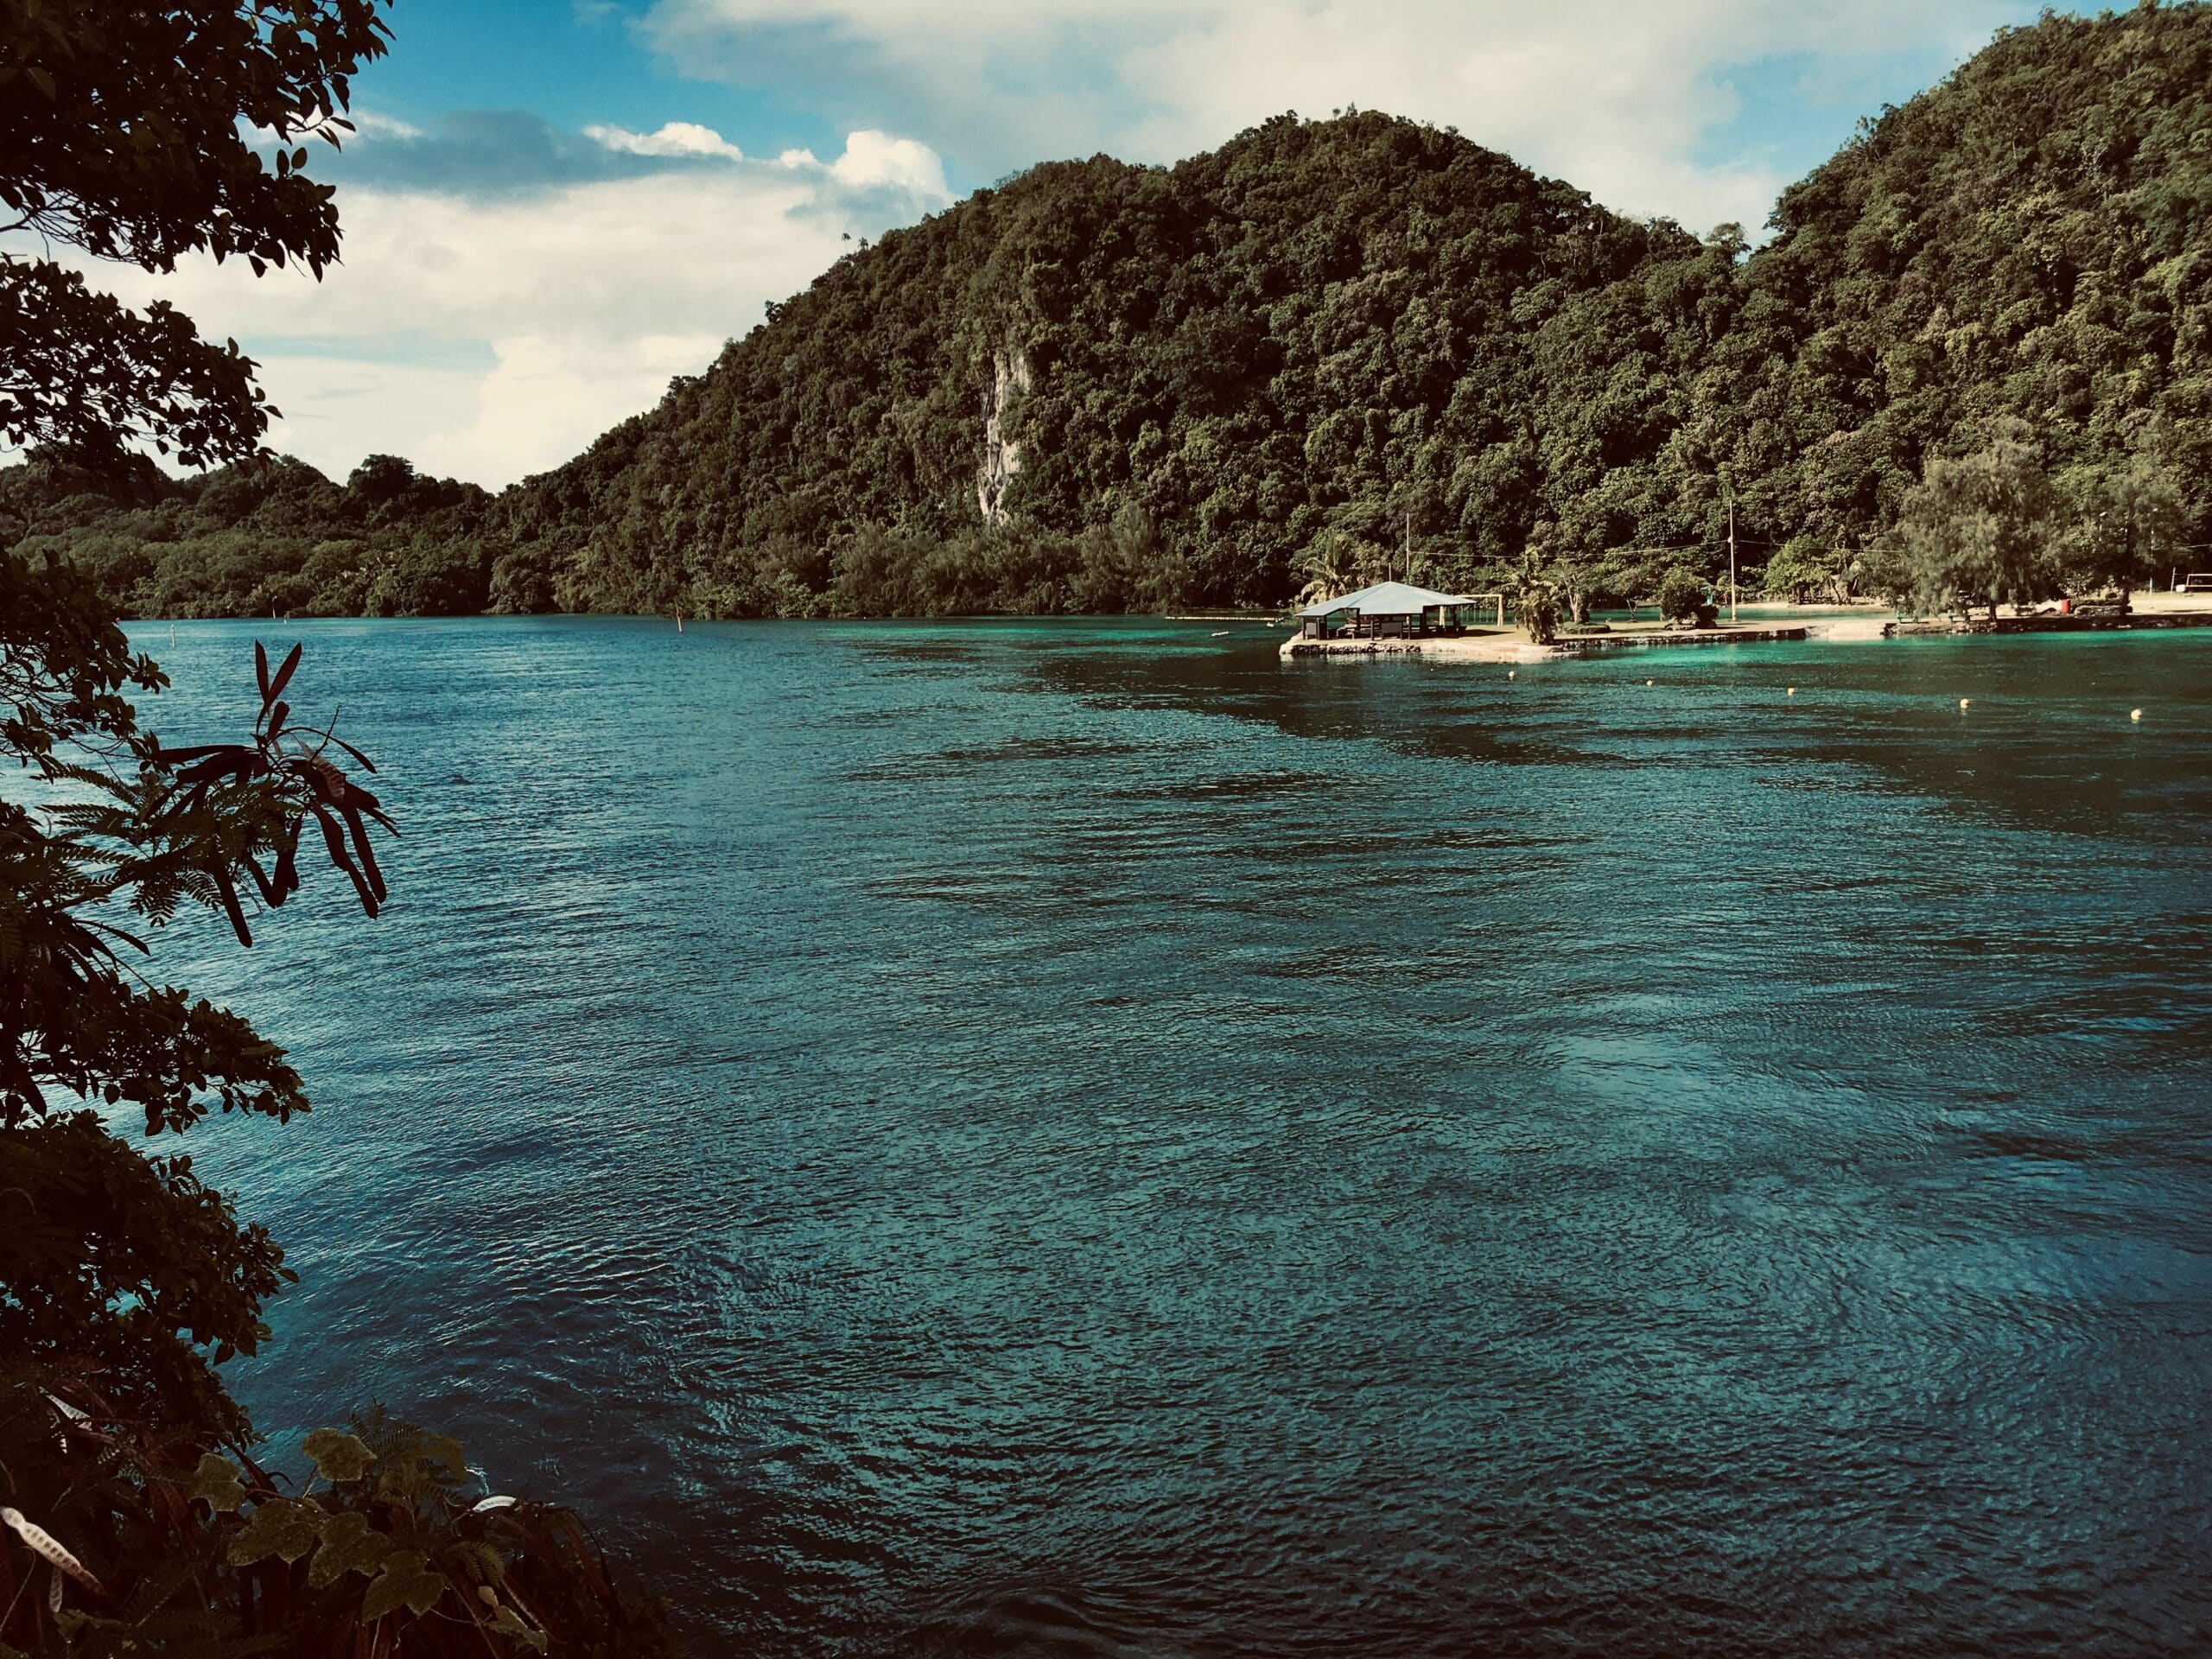 Vista da ilha de Koror, Palau- Representa seguro viagem Palau.